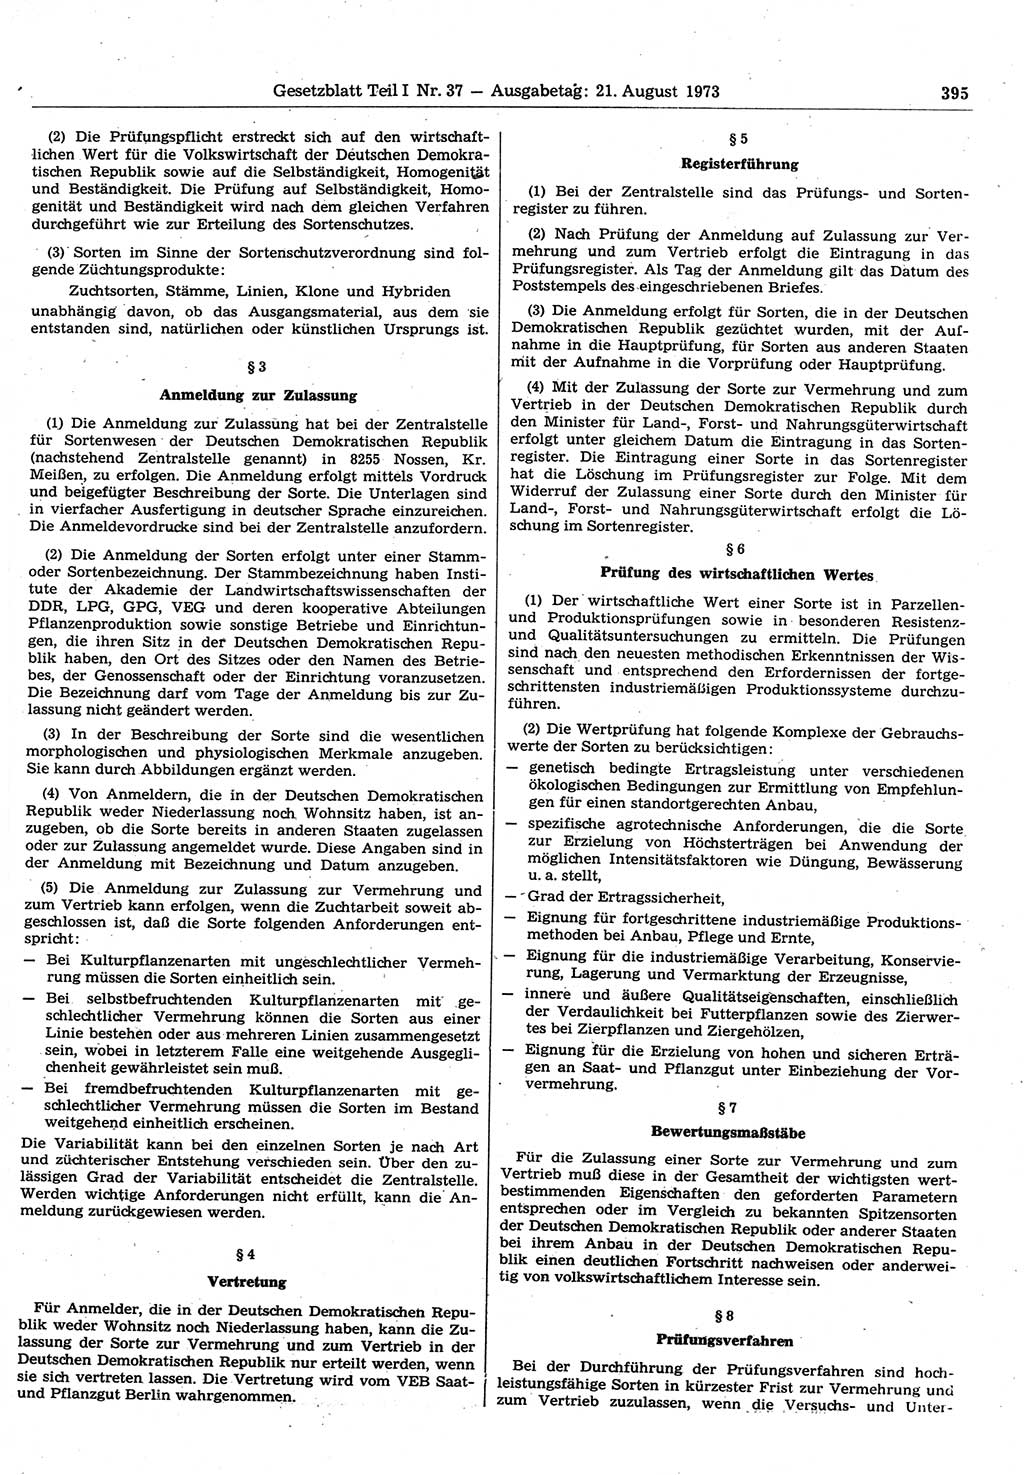 Gesetzblatt (GBl.) der Deutschen Demokratischen Republik (DDR) Teil Ⅰ 1973, Seite 395 (GBl. DDR Ⅰ 1973, S. 395)